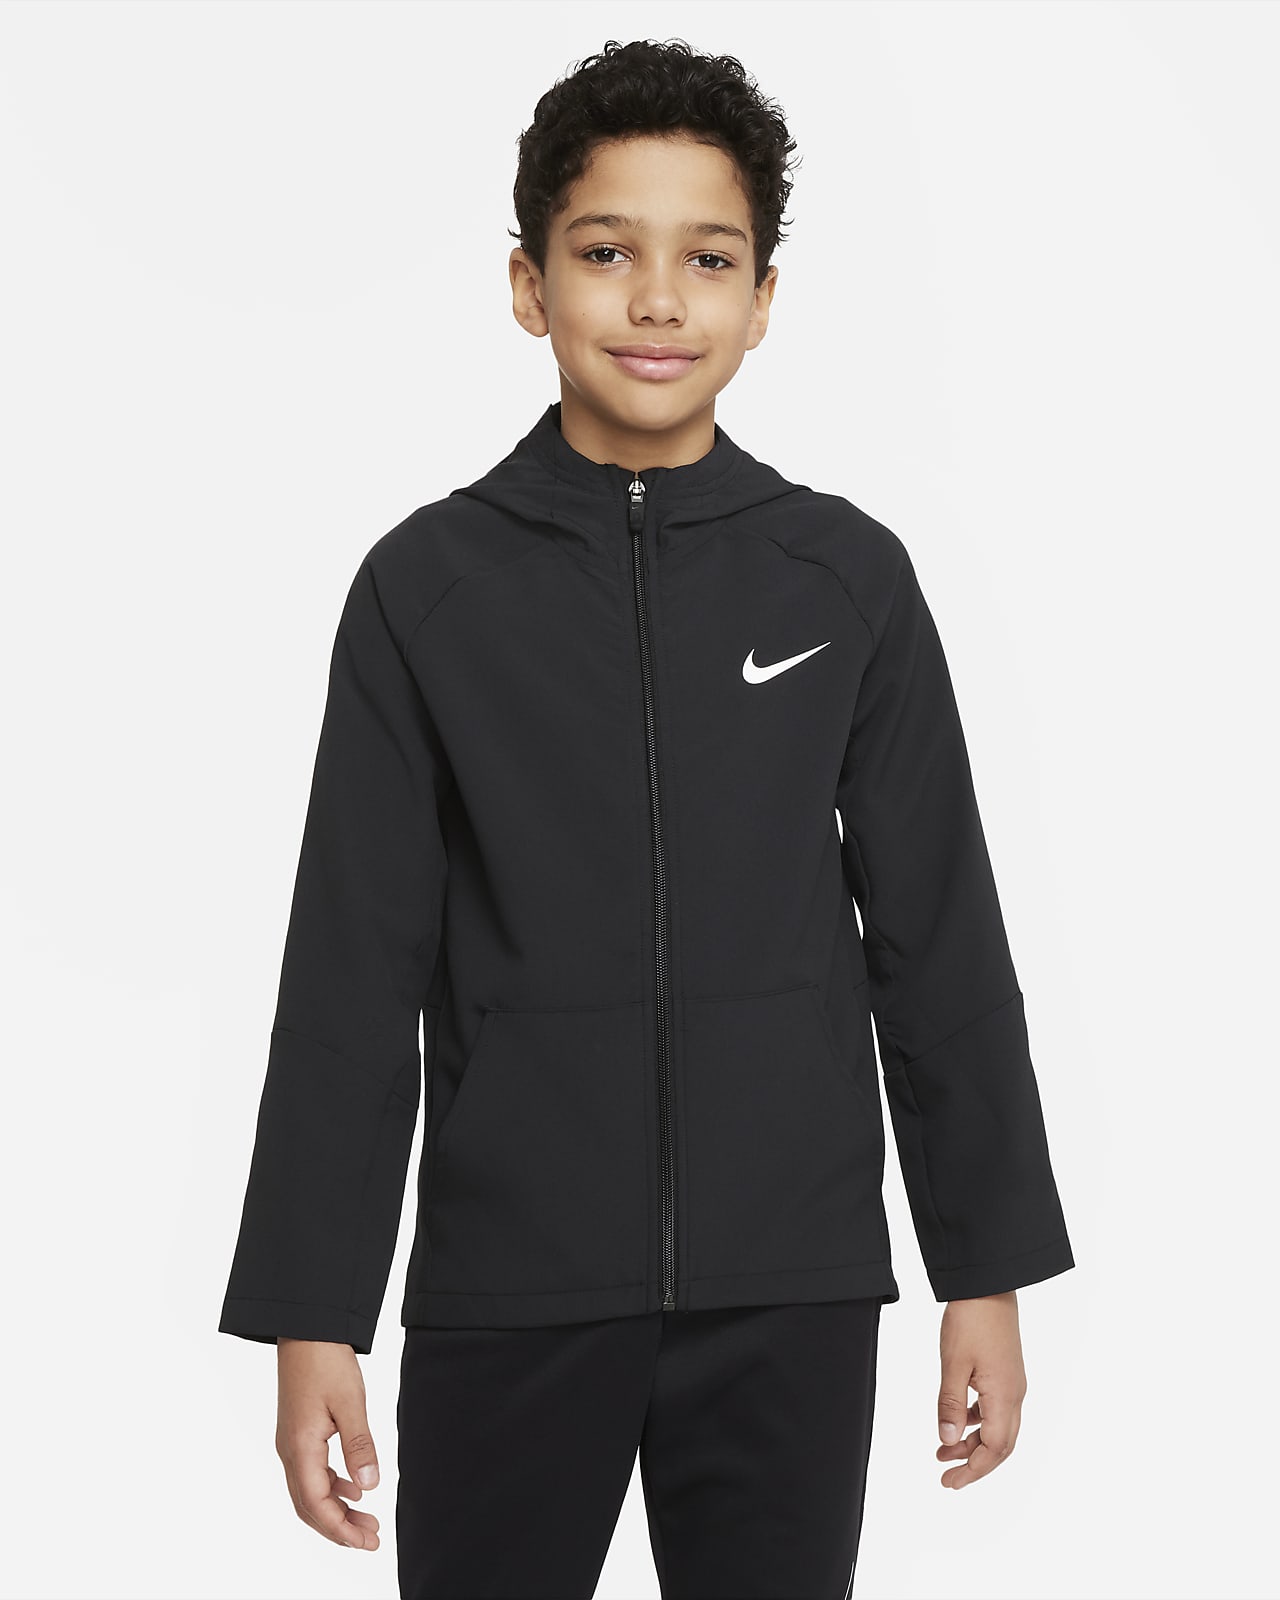 Vestes et blousons Nike Junior (8-15 ans)